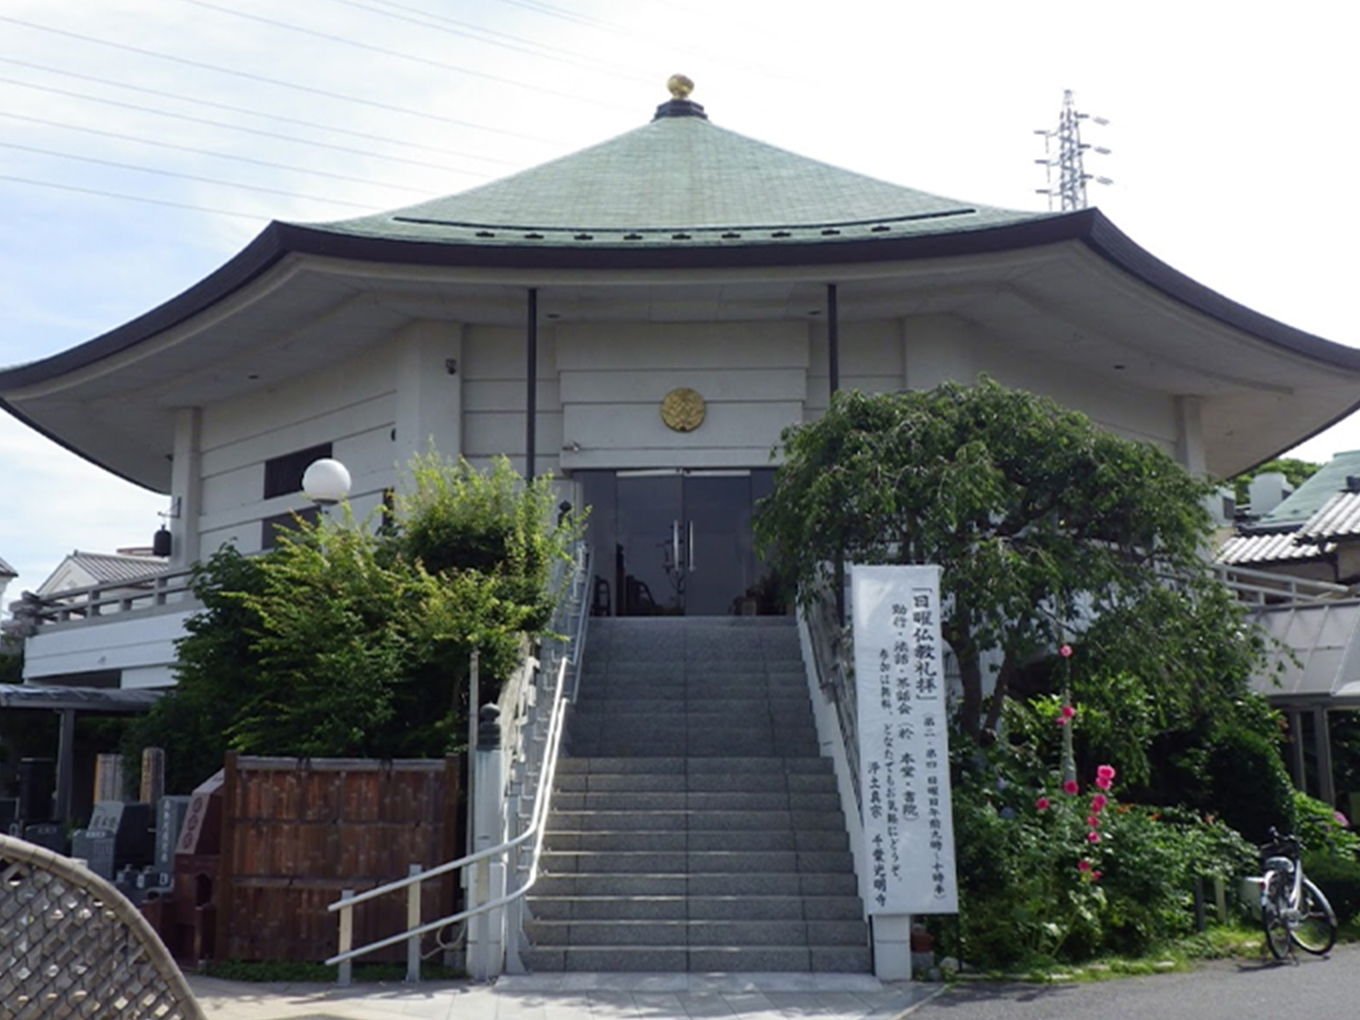 千葉で葬儀・葬式・家族葬が税込10.45万円からできる小さな森の家 千葉光明寺の外観